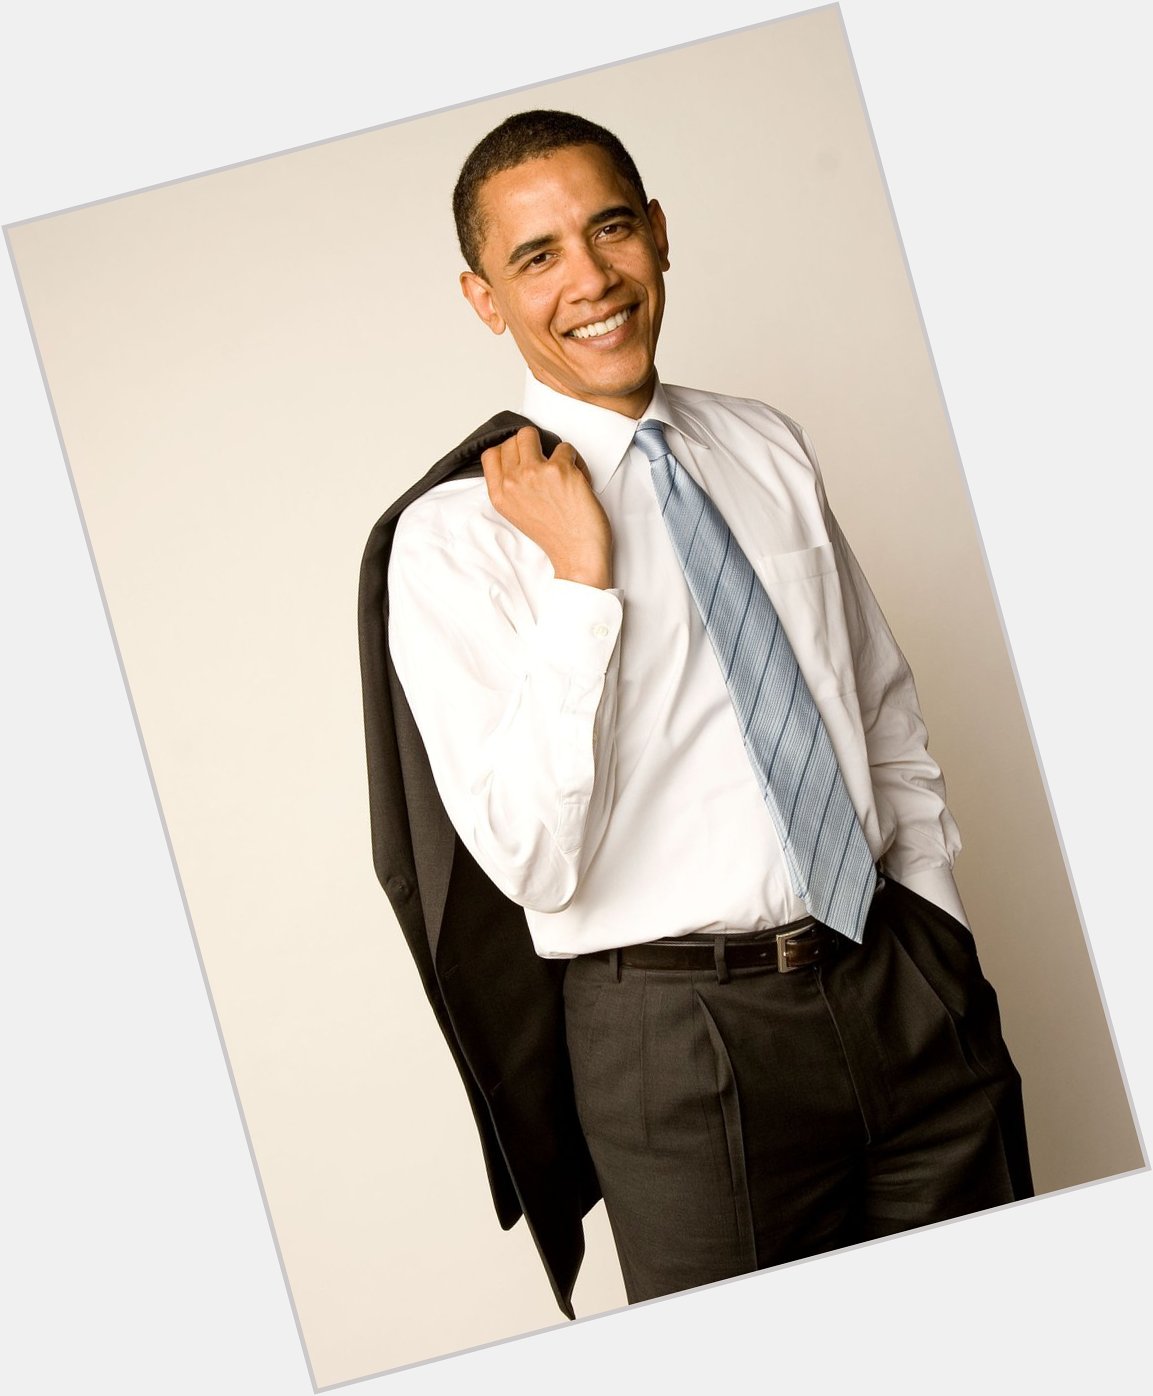 Barack Obama. 2000.

Today is Barack Obama s 61st birthday. Happy birthday to him! 